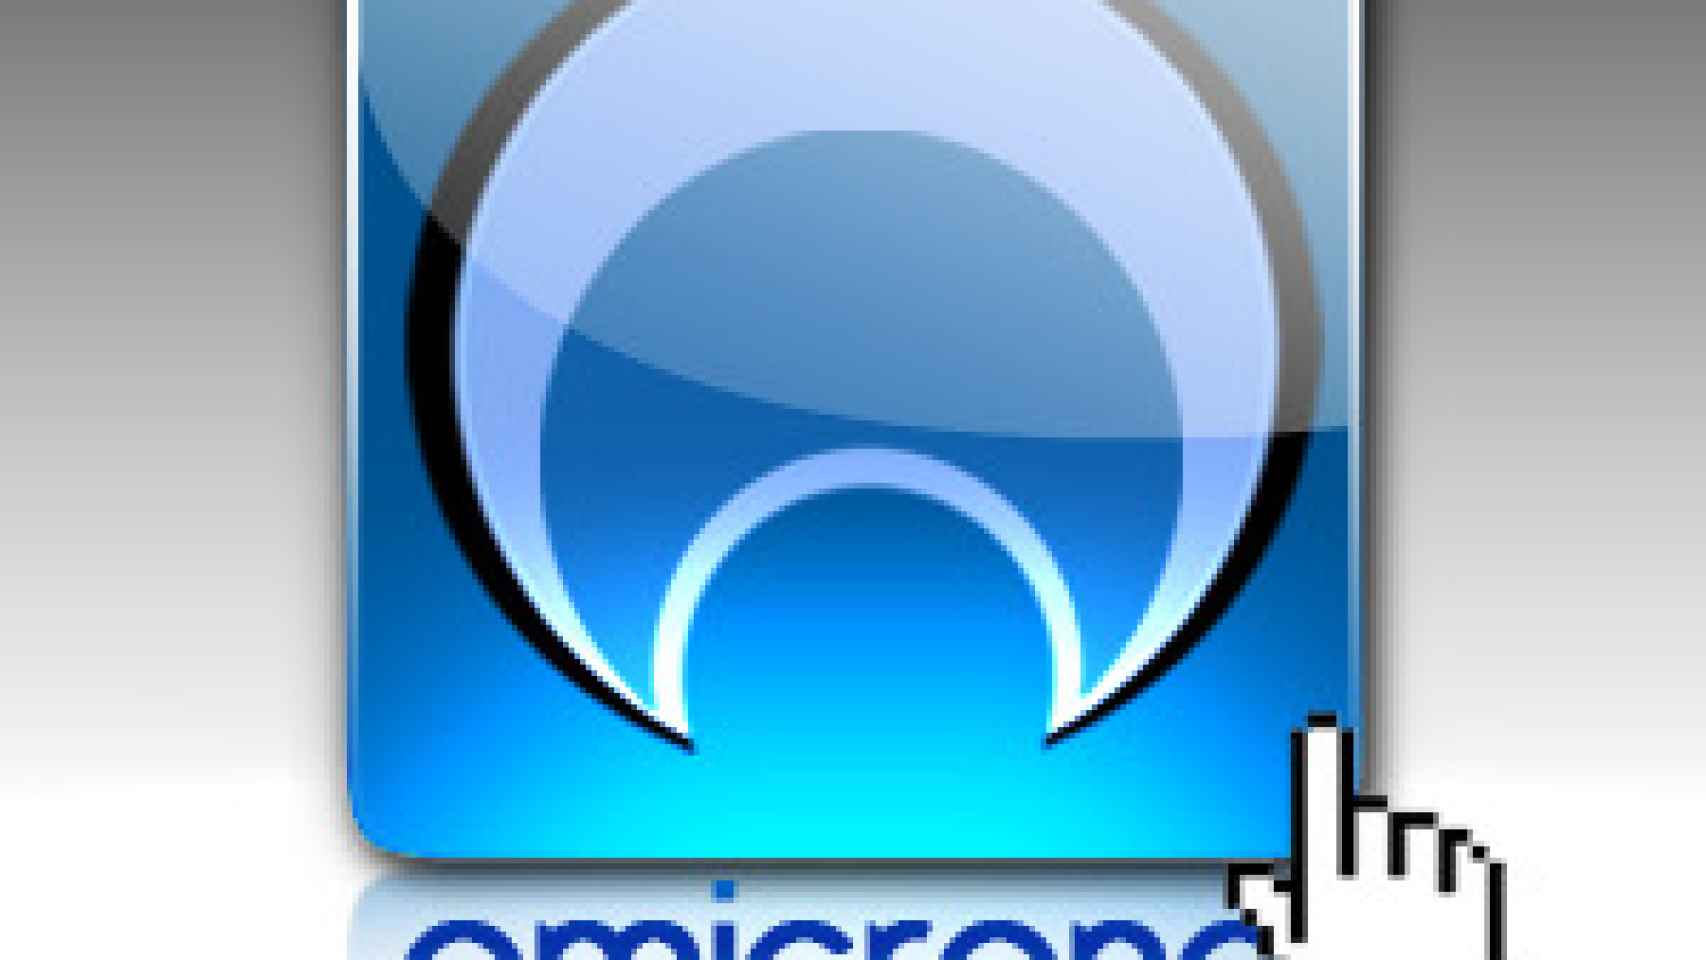 Bienvenidos al estreno de nuestro nuevo Blog: Omicrono.com, pruébalo y verás